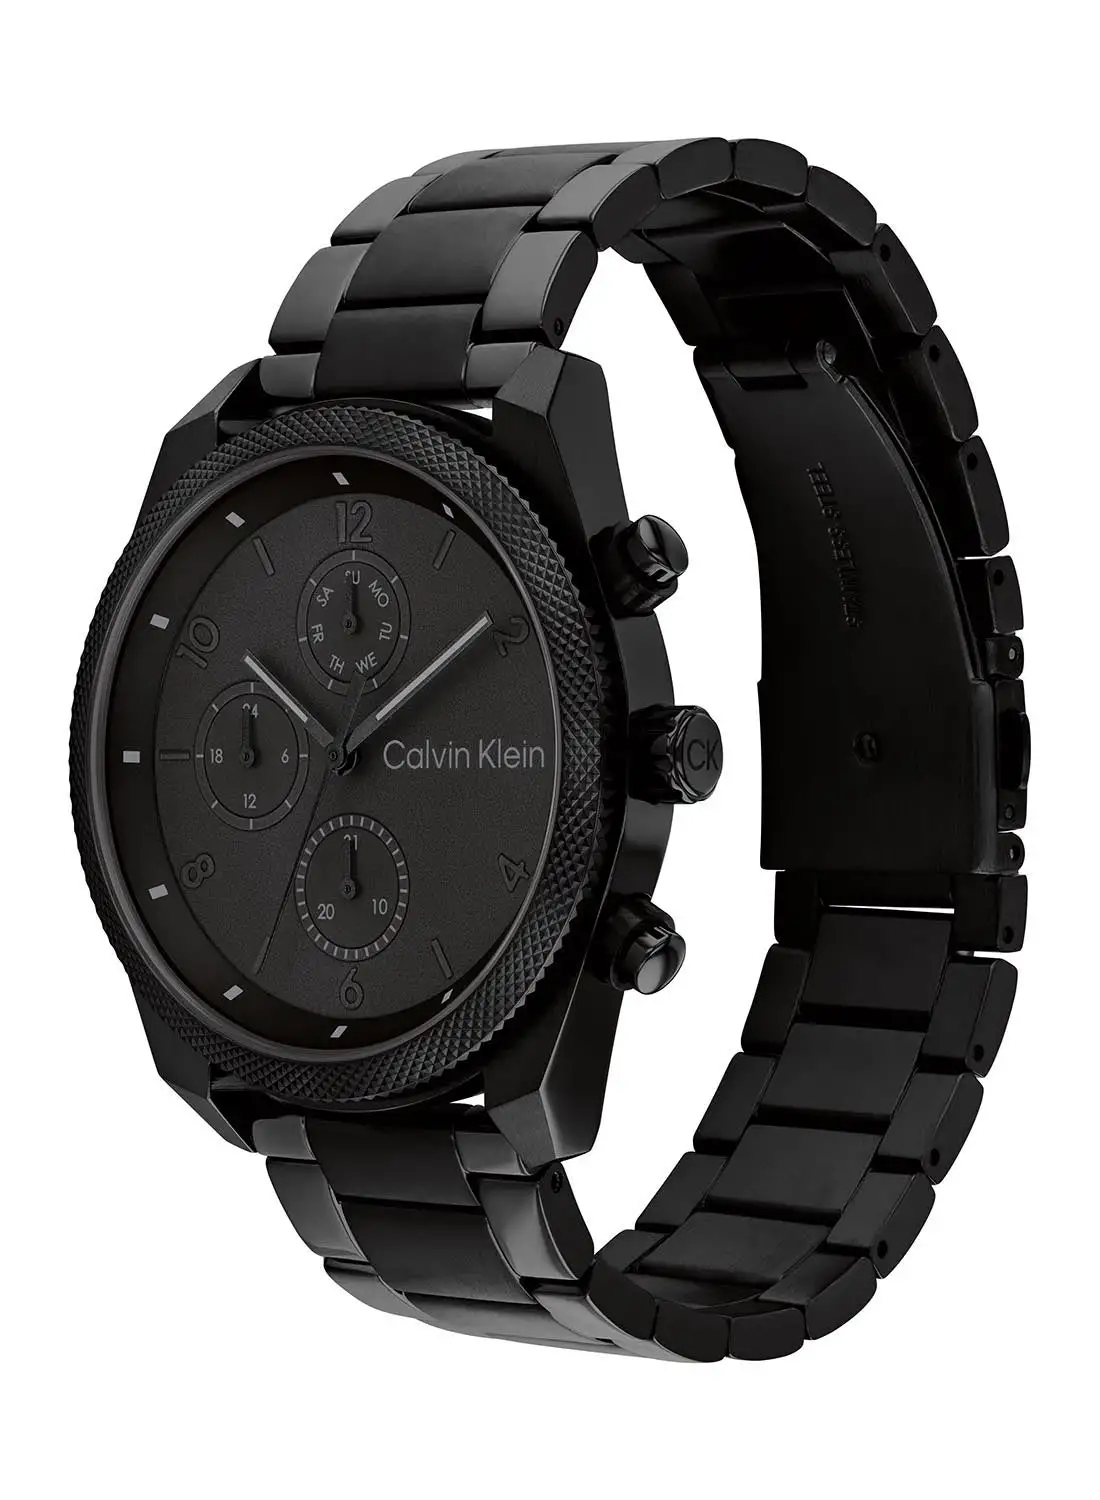 CALVIN KLEIN Men's Analog Round Shape Stainless Steel Wrist Watch 25200359 - 44 Mm